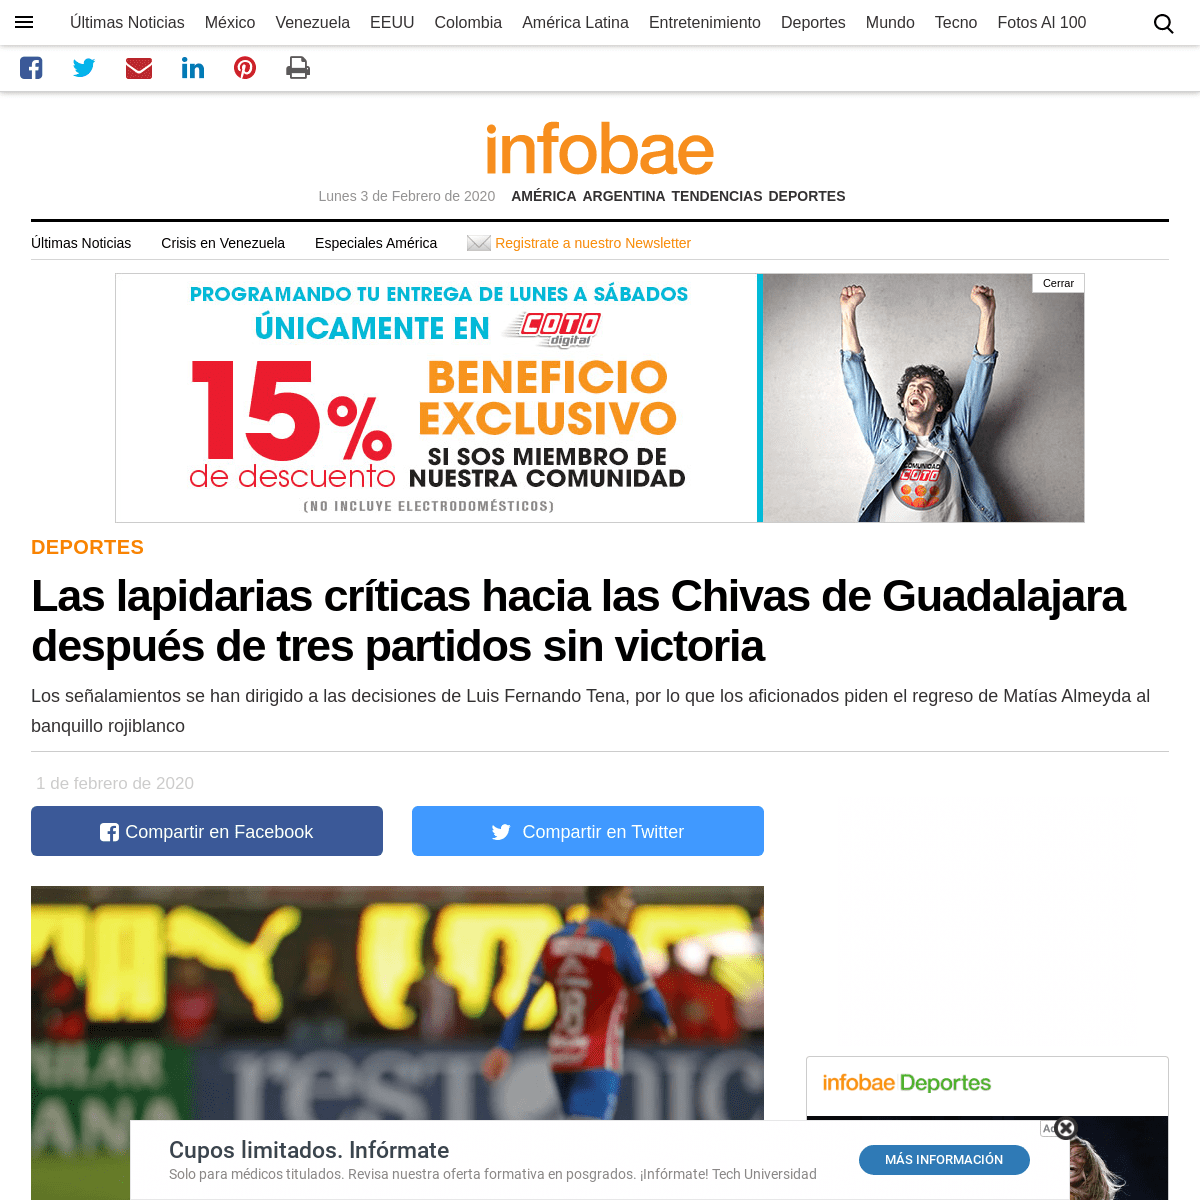 A complete backup of www.infobae.com/america/deportes/2020/02/01/las-lapidarias-criticas-hacia-las-chivas-de-guadalajara-despues